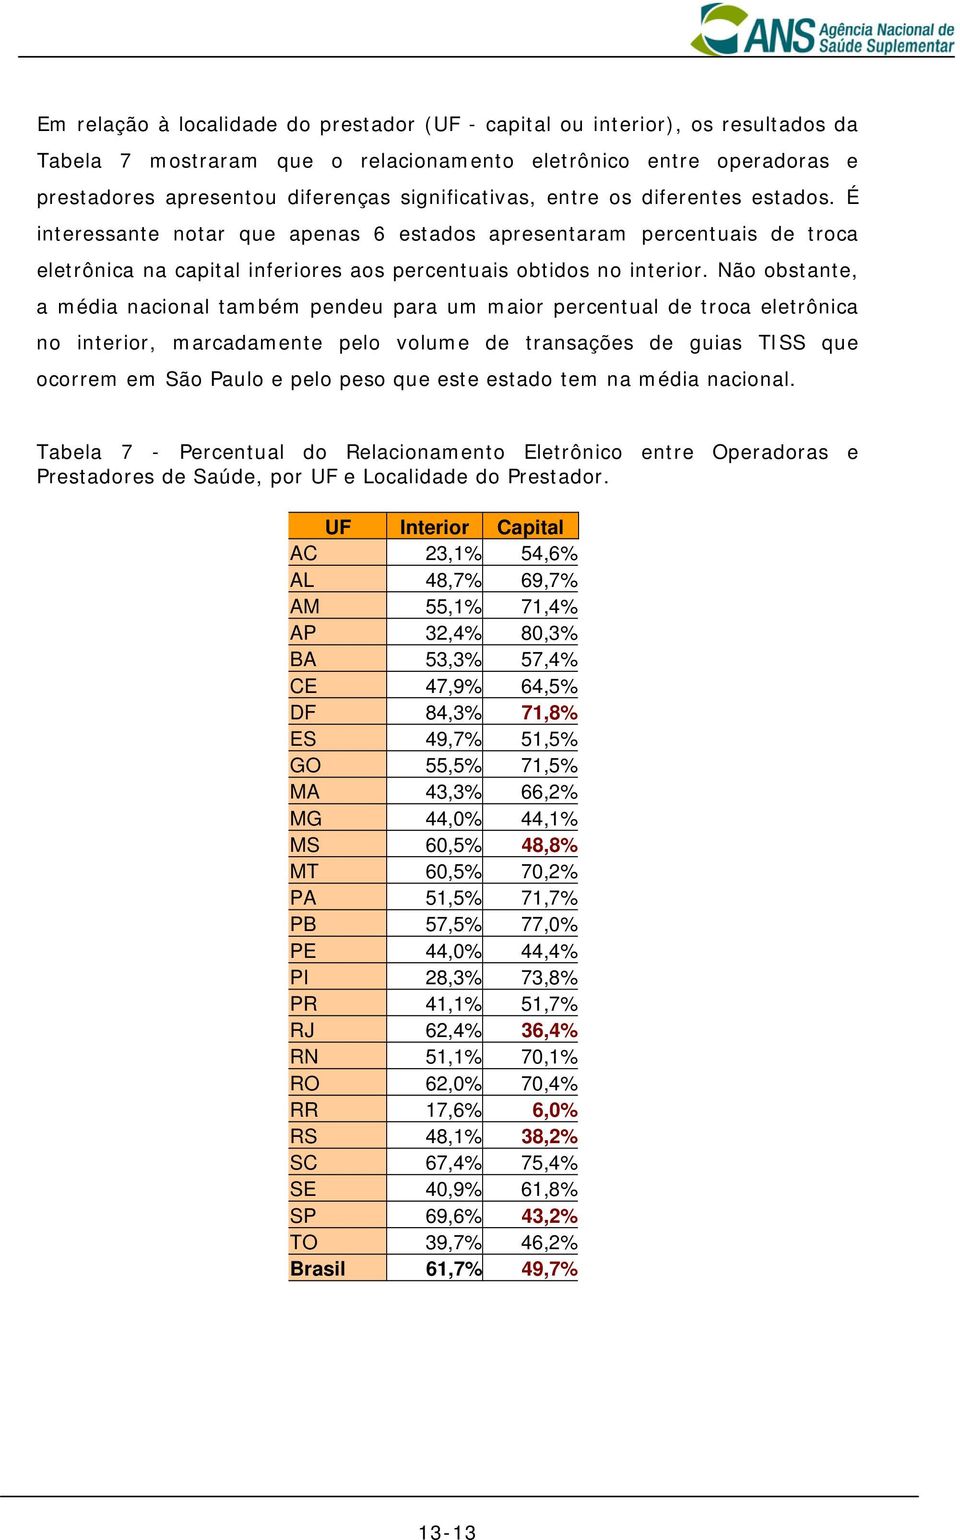 Não obstante, a média nacional também pendeu para um maior percentual de troca eletrônica no interior, marcadamente pelo volume de transações de guias TISS que ocorrem em São Paulo e pelo peso que